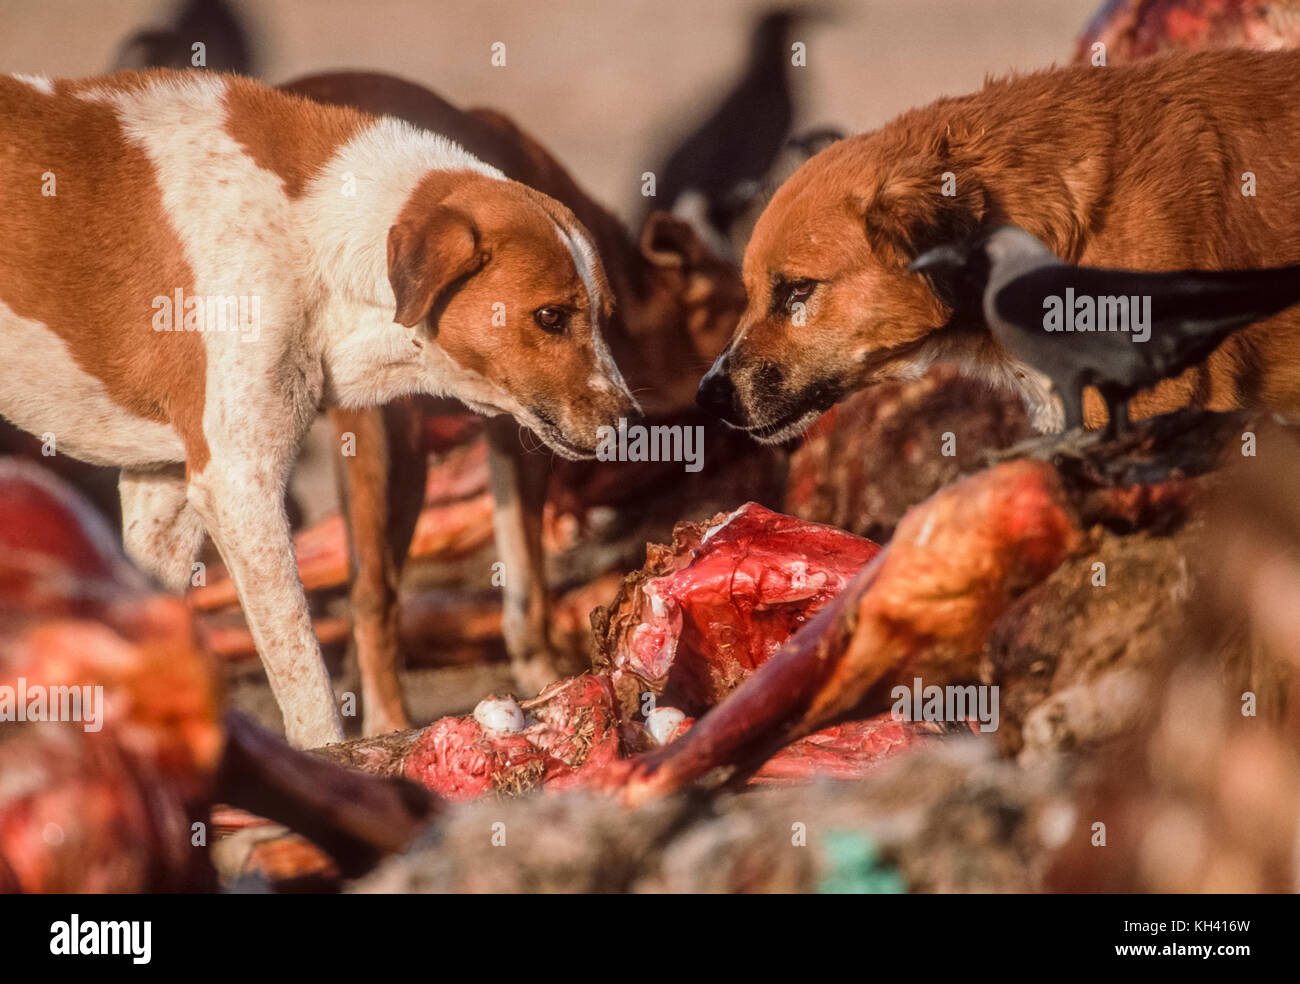 Zwei streunenden Hunde (Canis familiaris oder Canis Lupus Familiaris), Scavenging auf Schlachtkörper Tier dump, Rajasthan, Indien Stockfoto